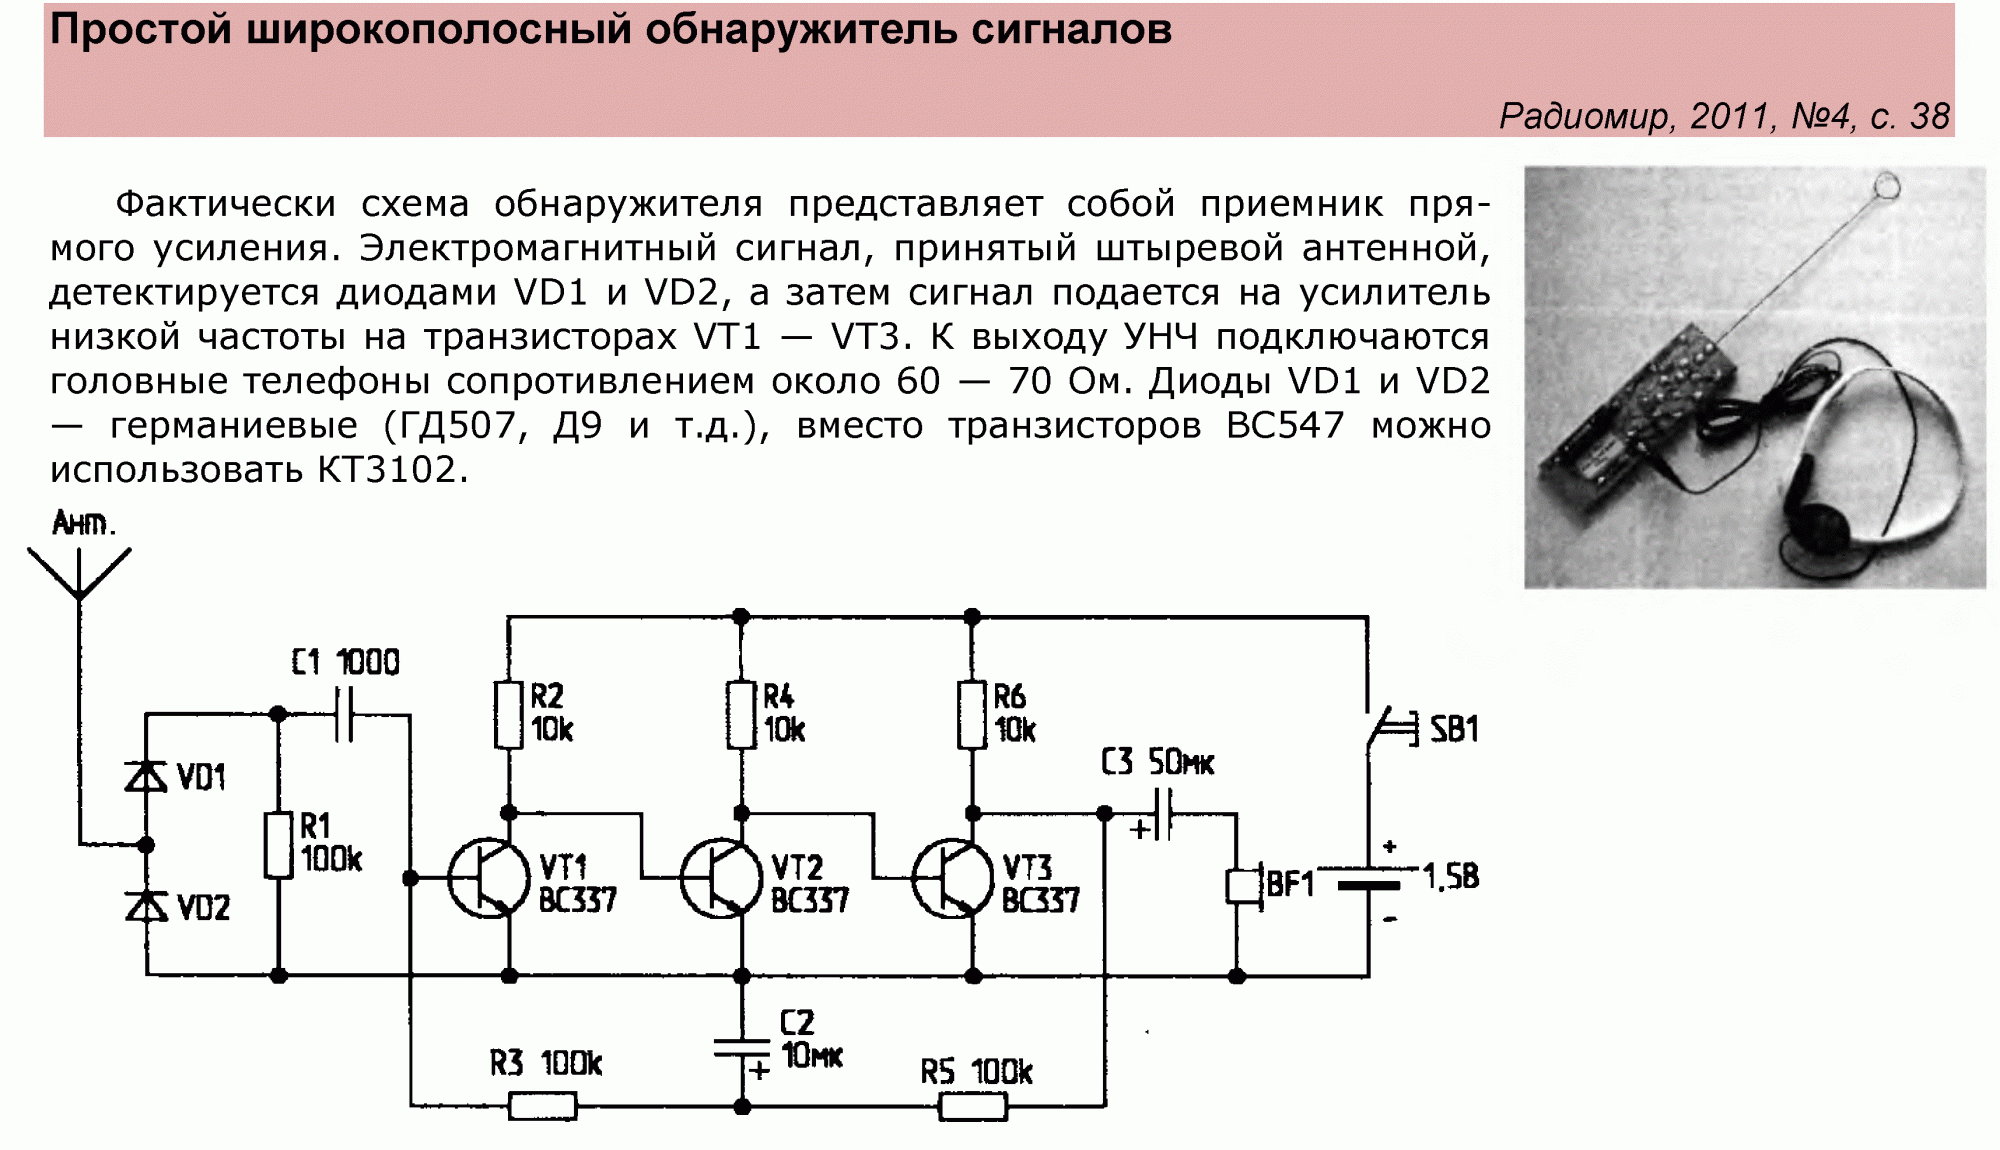 Детектор ру. Транзисторный детектор схема. Простые схемы для начинающих радиолюбителей. Детектор схема электрическая принципиальная. Схемы радиолюбительских устройств для начинающих радиолюбителей.